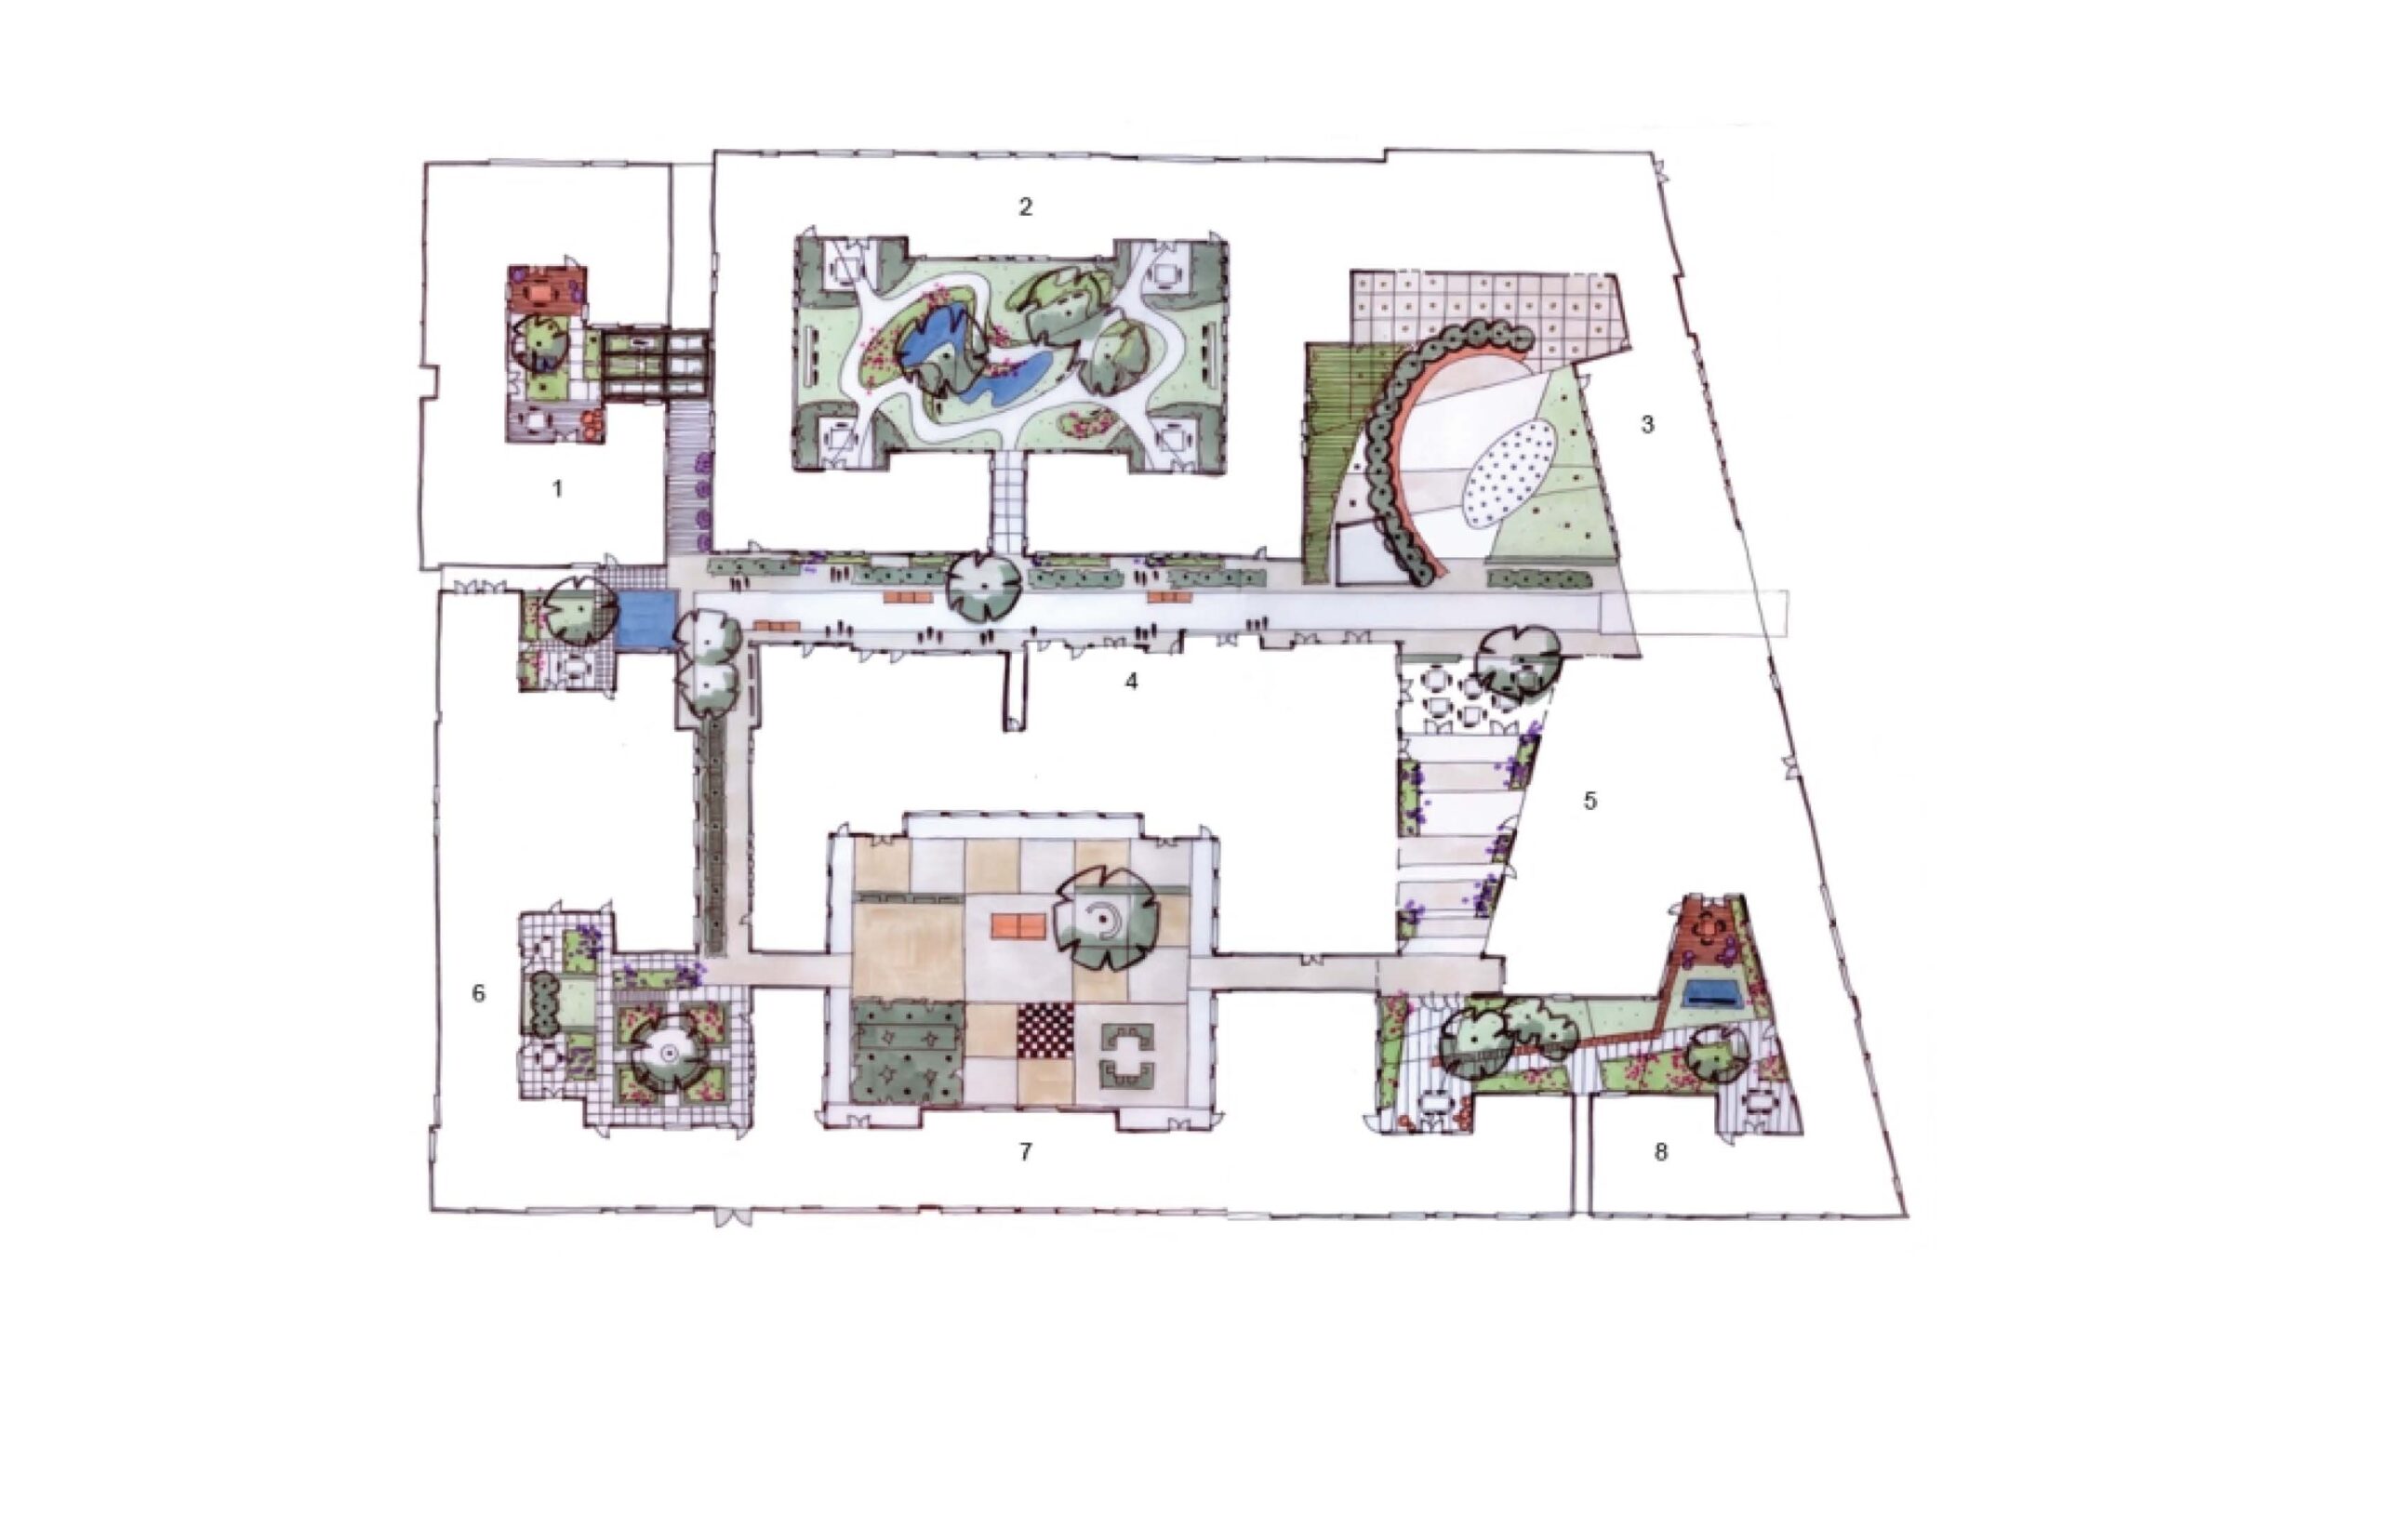 De Hogeweyk Floor Plan showing outdoor areas